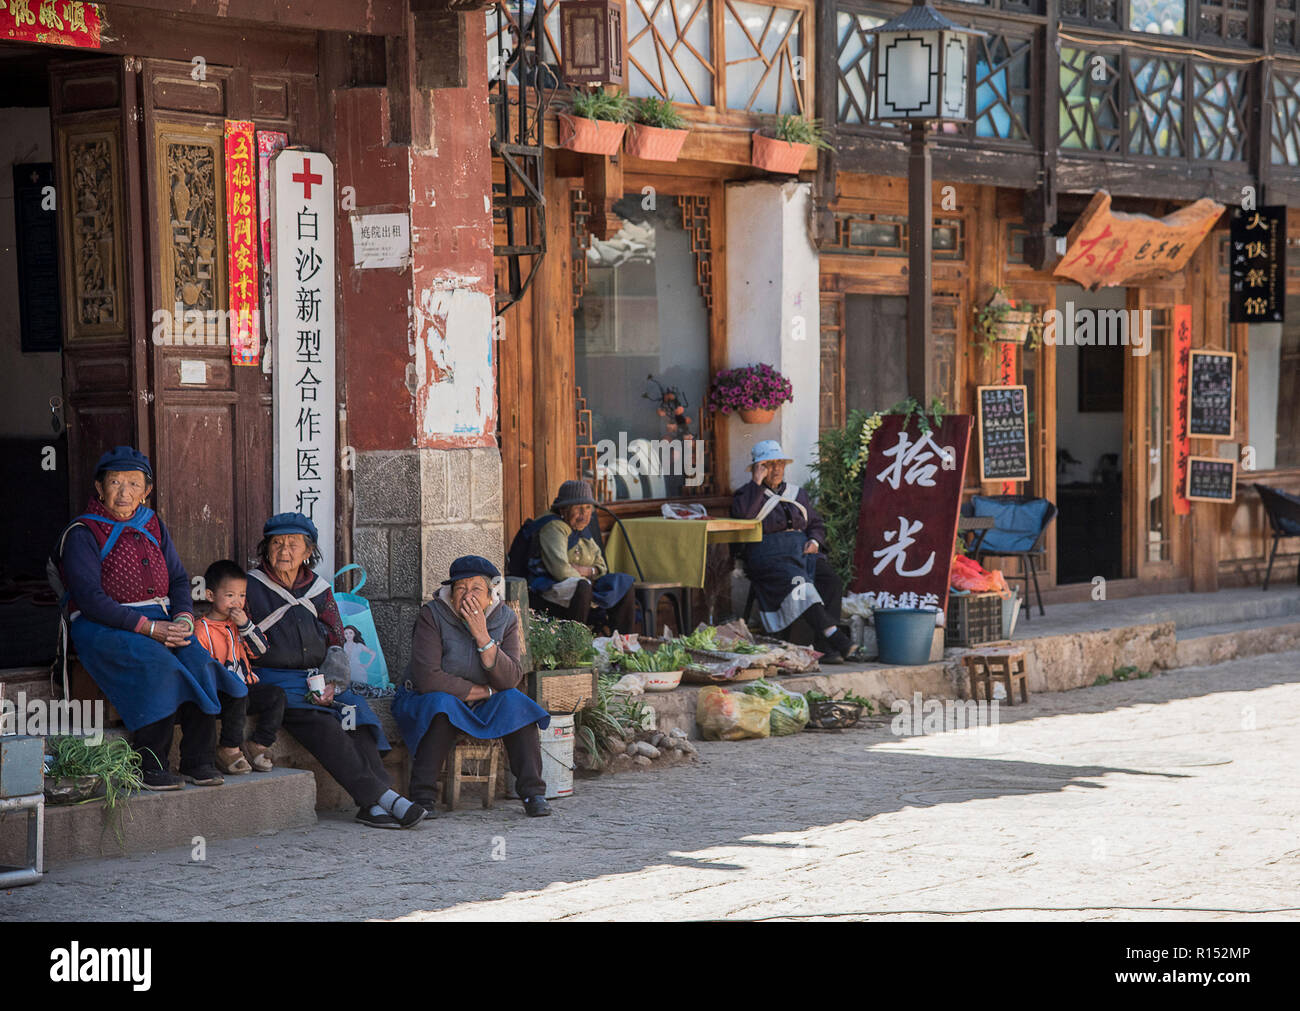 Famiglia di minoranza etnica cinese seduta al di fuori di un negozio nella città antica di Baisha sud ovest della Cina. Foto Stock